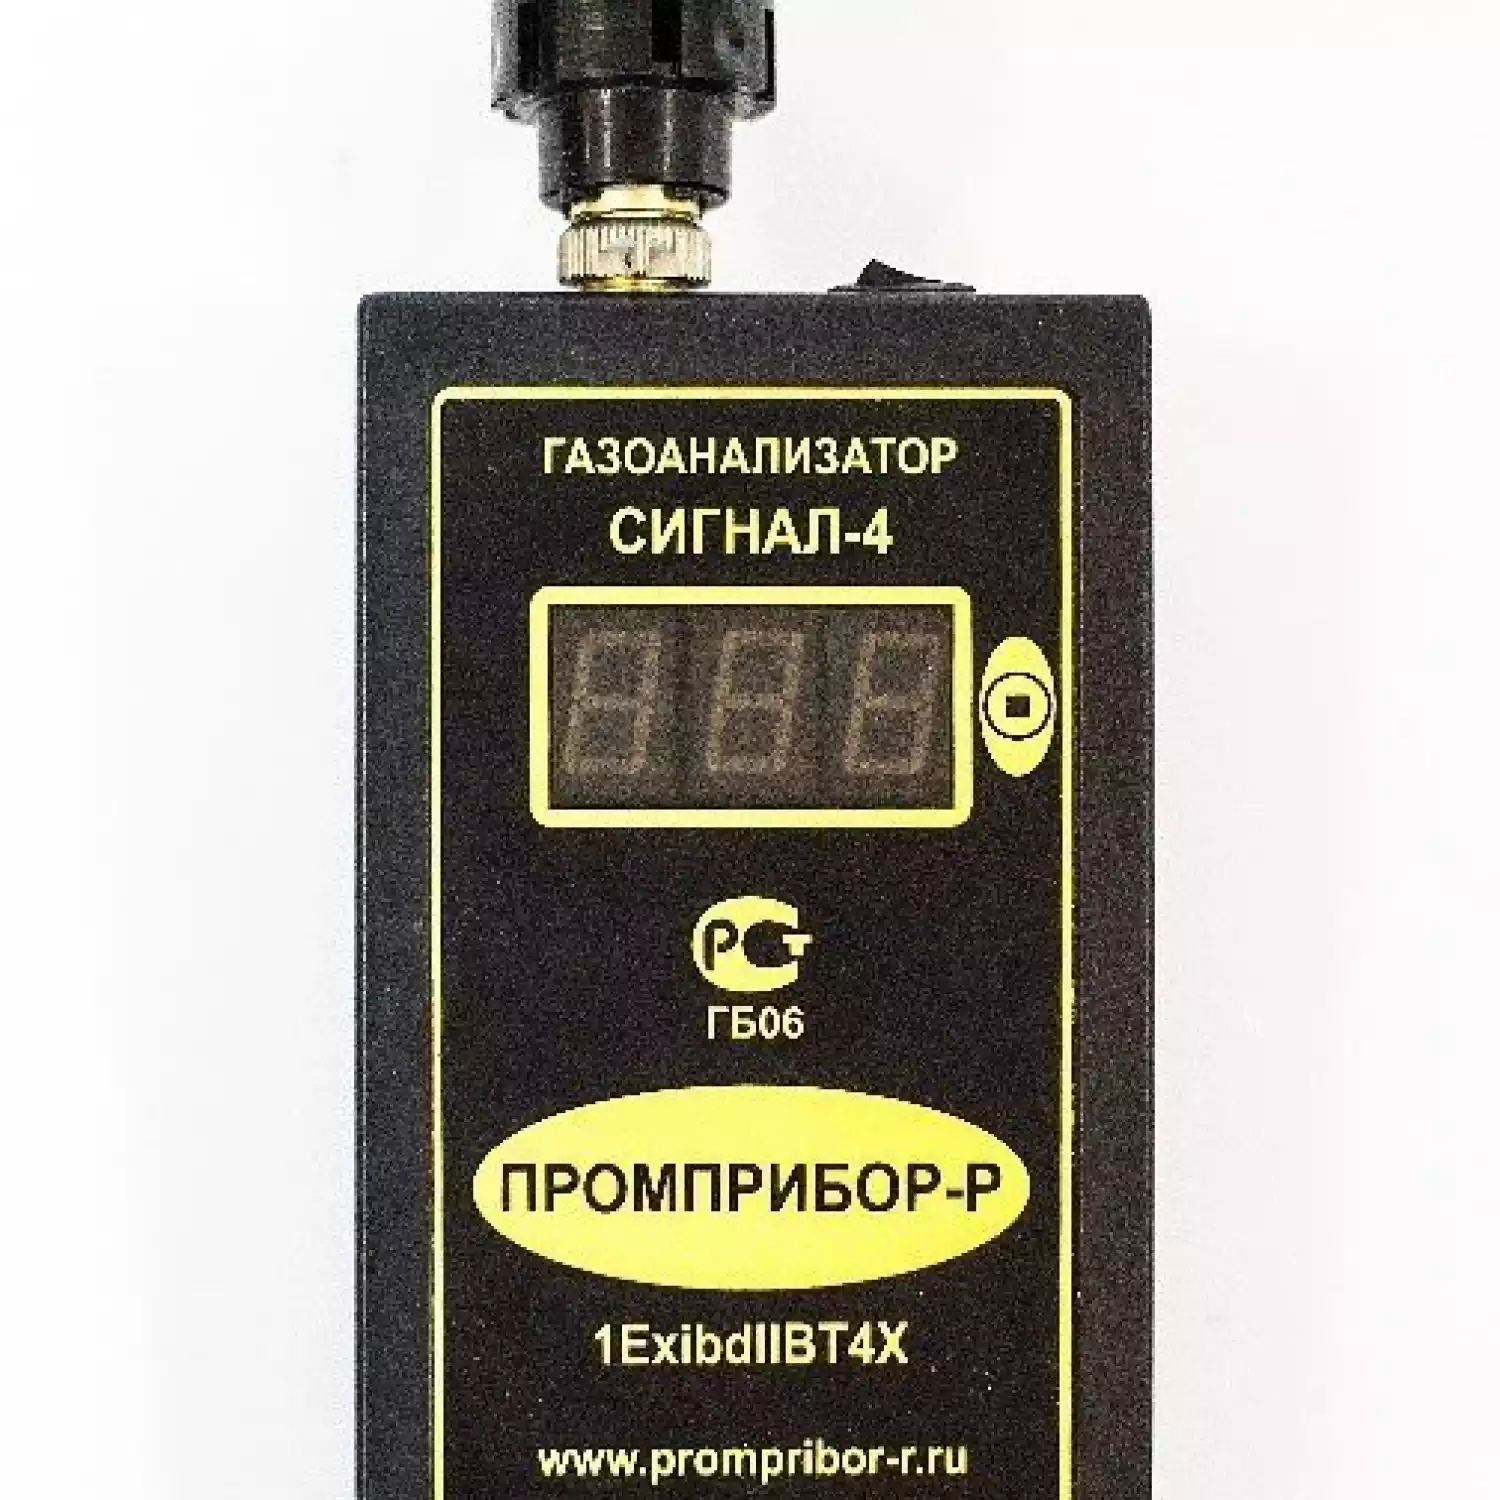 Персональный переносной газоанализатор Сигнал-4 двухканальный на ВОГ (Термокаталитический) - 1